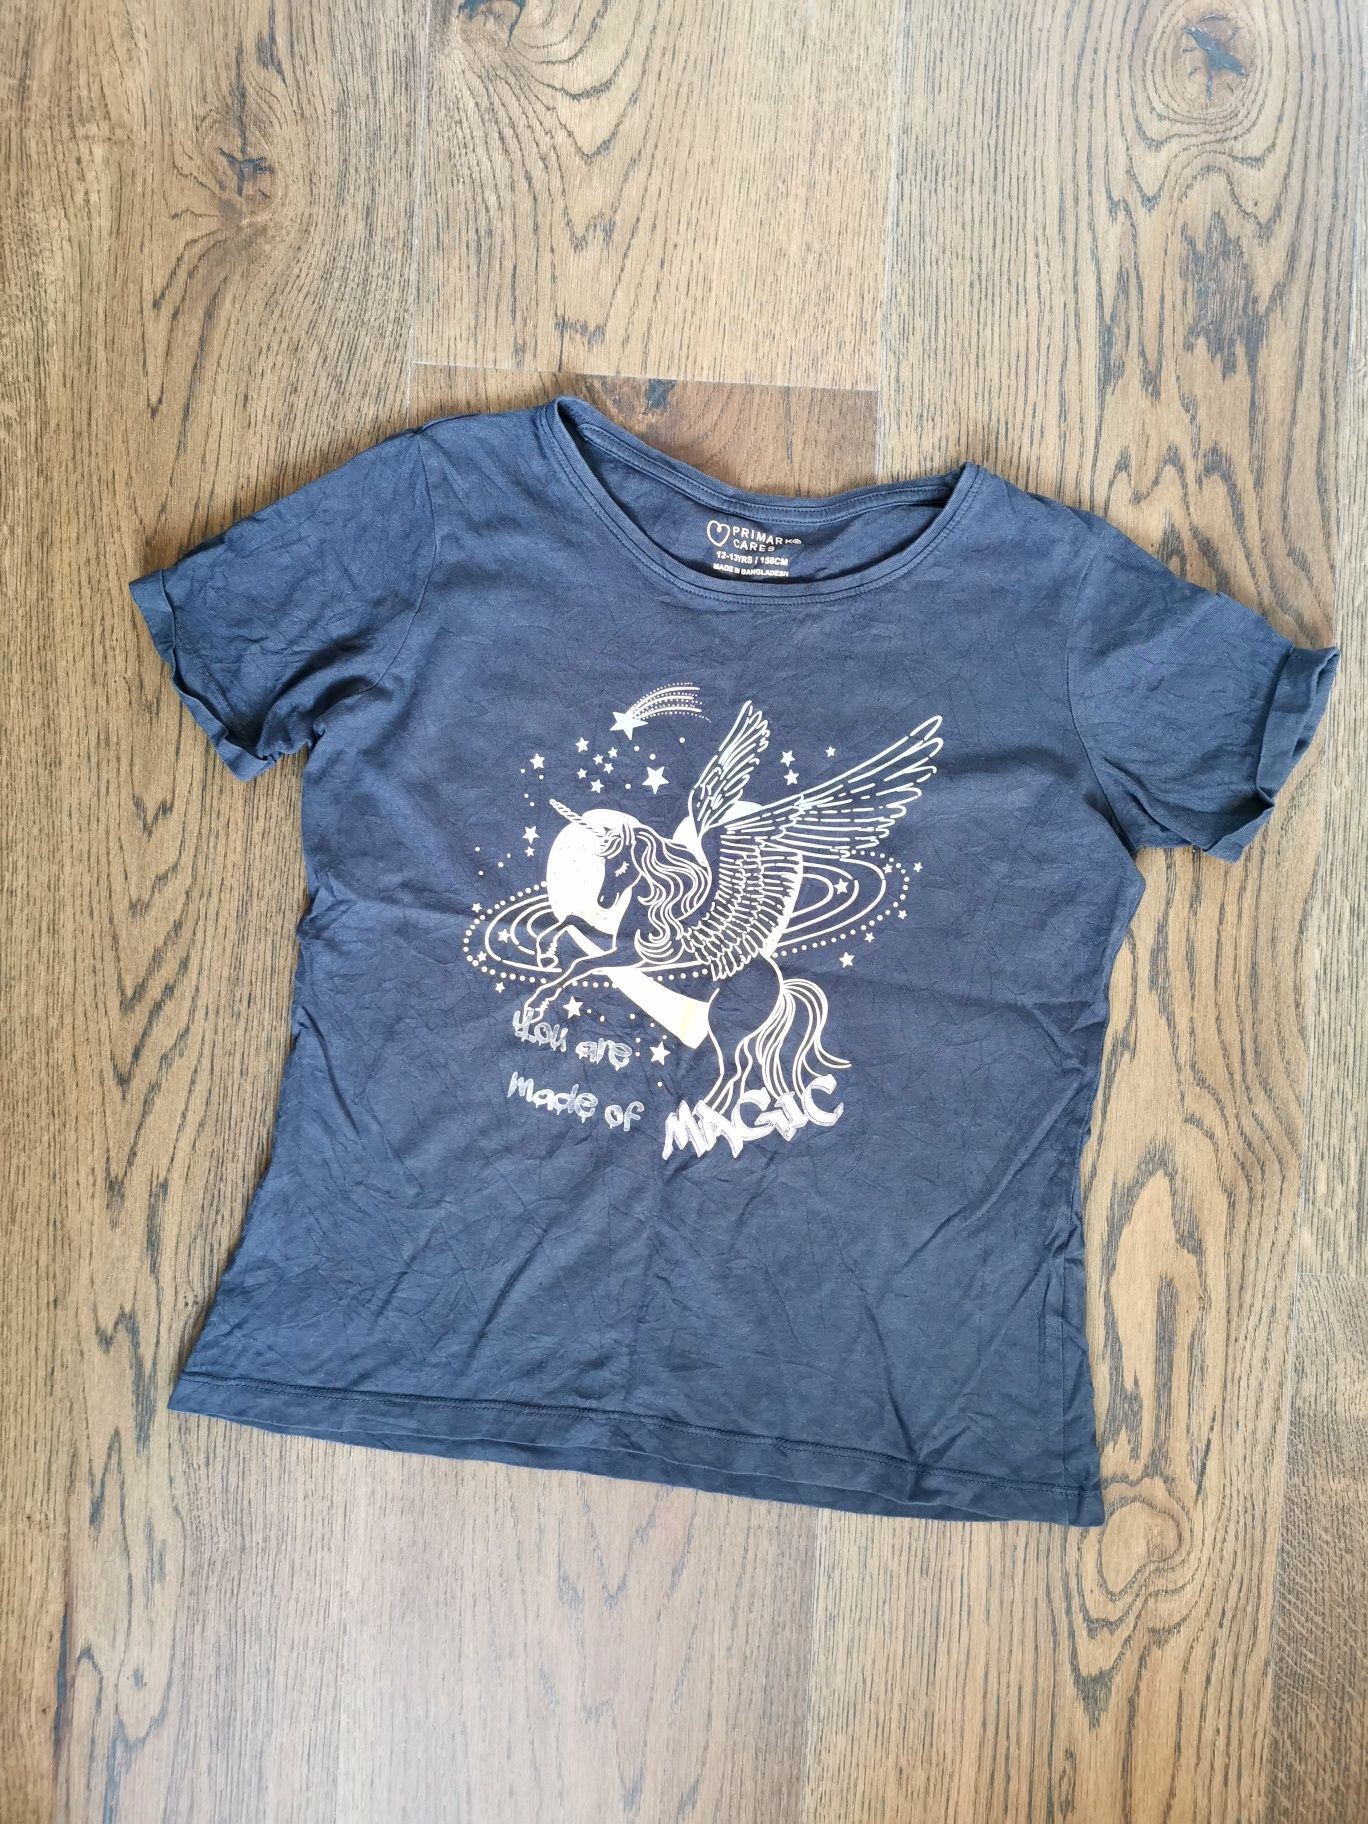 Szara koszulka T-shirt z jednorożcem, rozmiar 158 cm